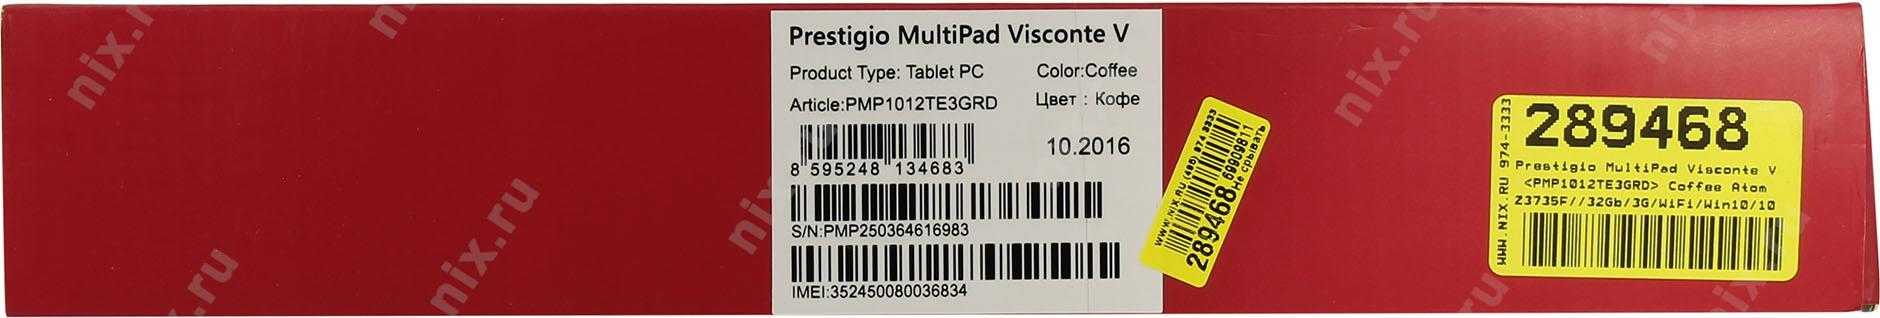 Обзор планшета prestigio multipad visconte v